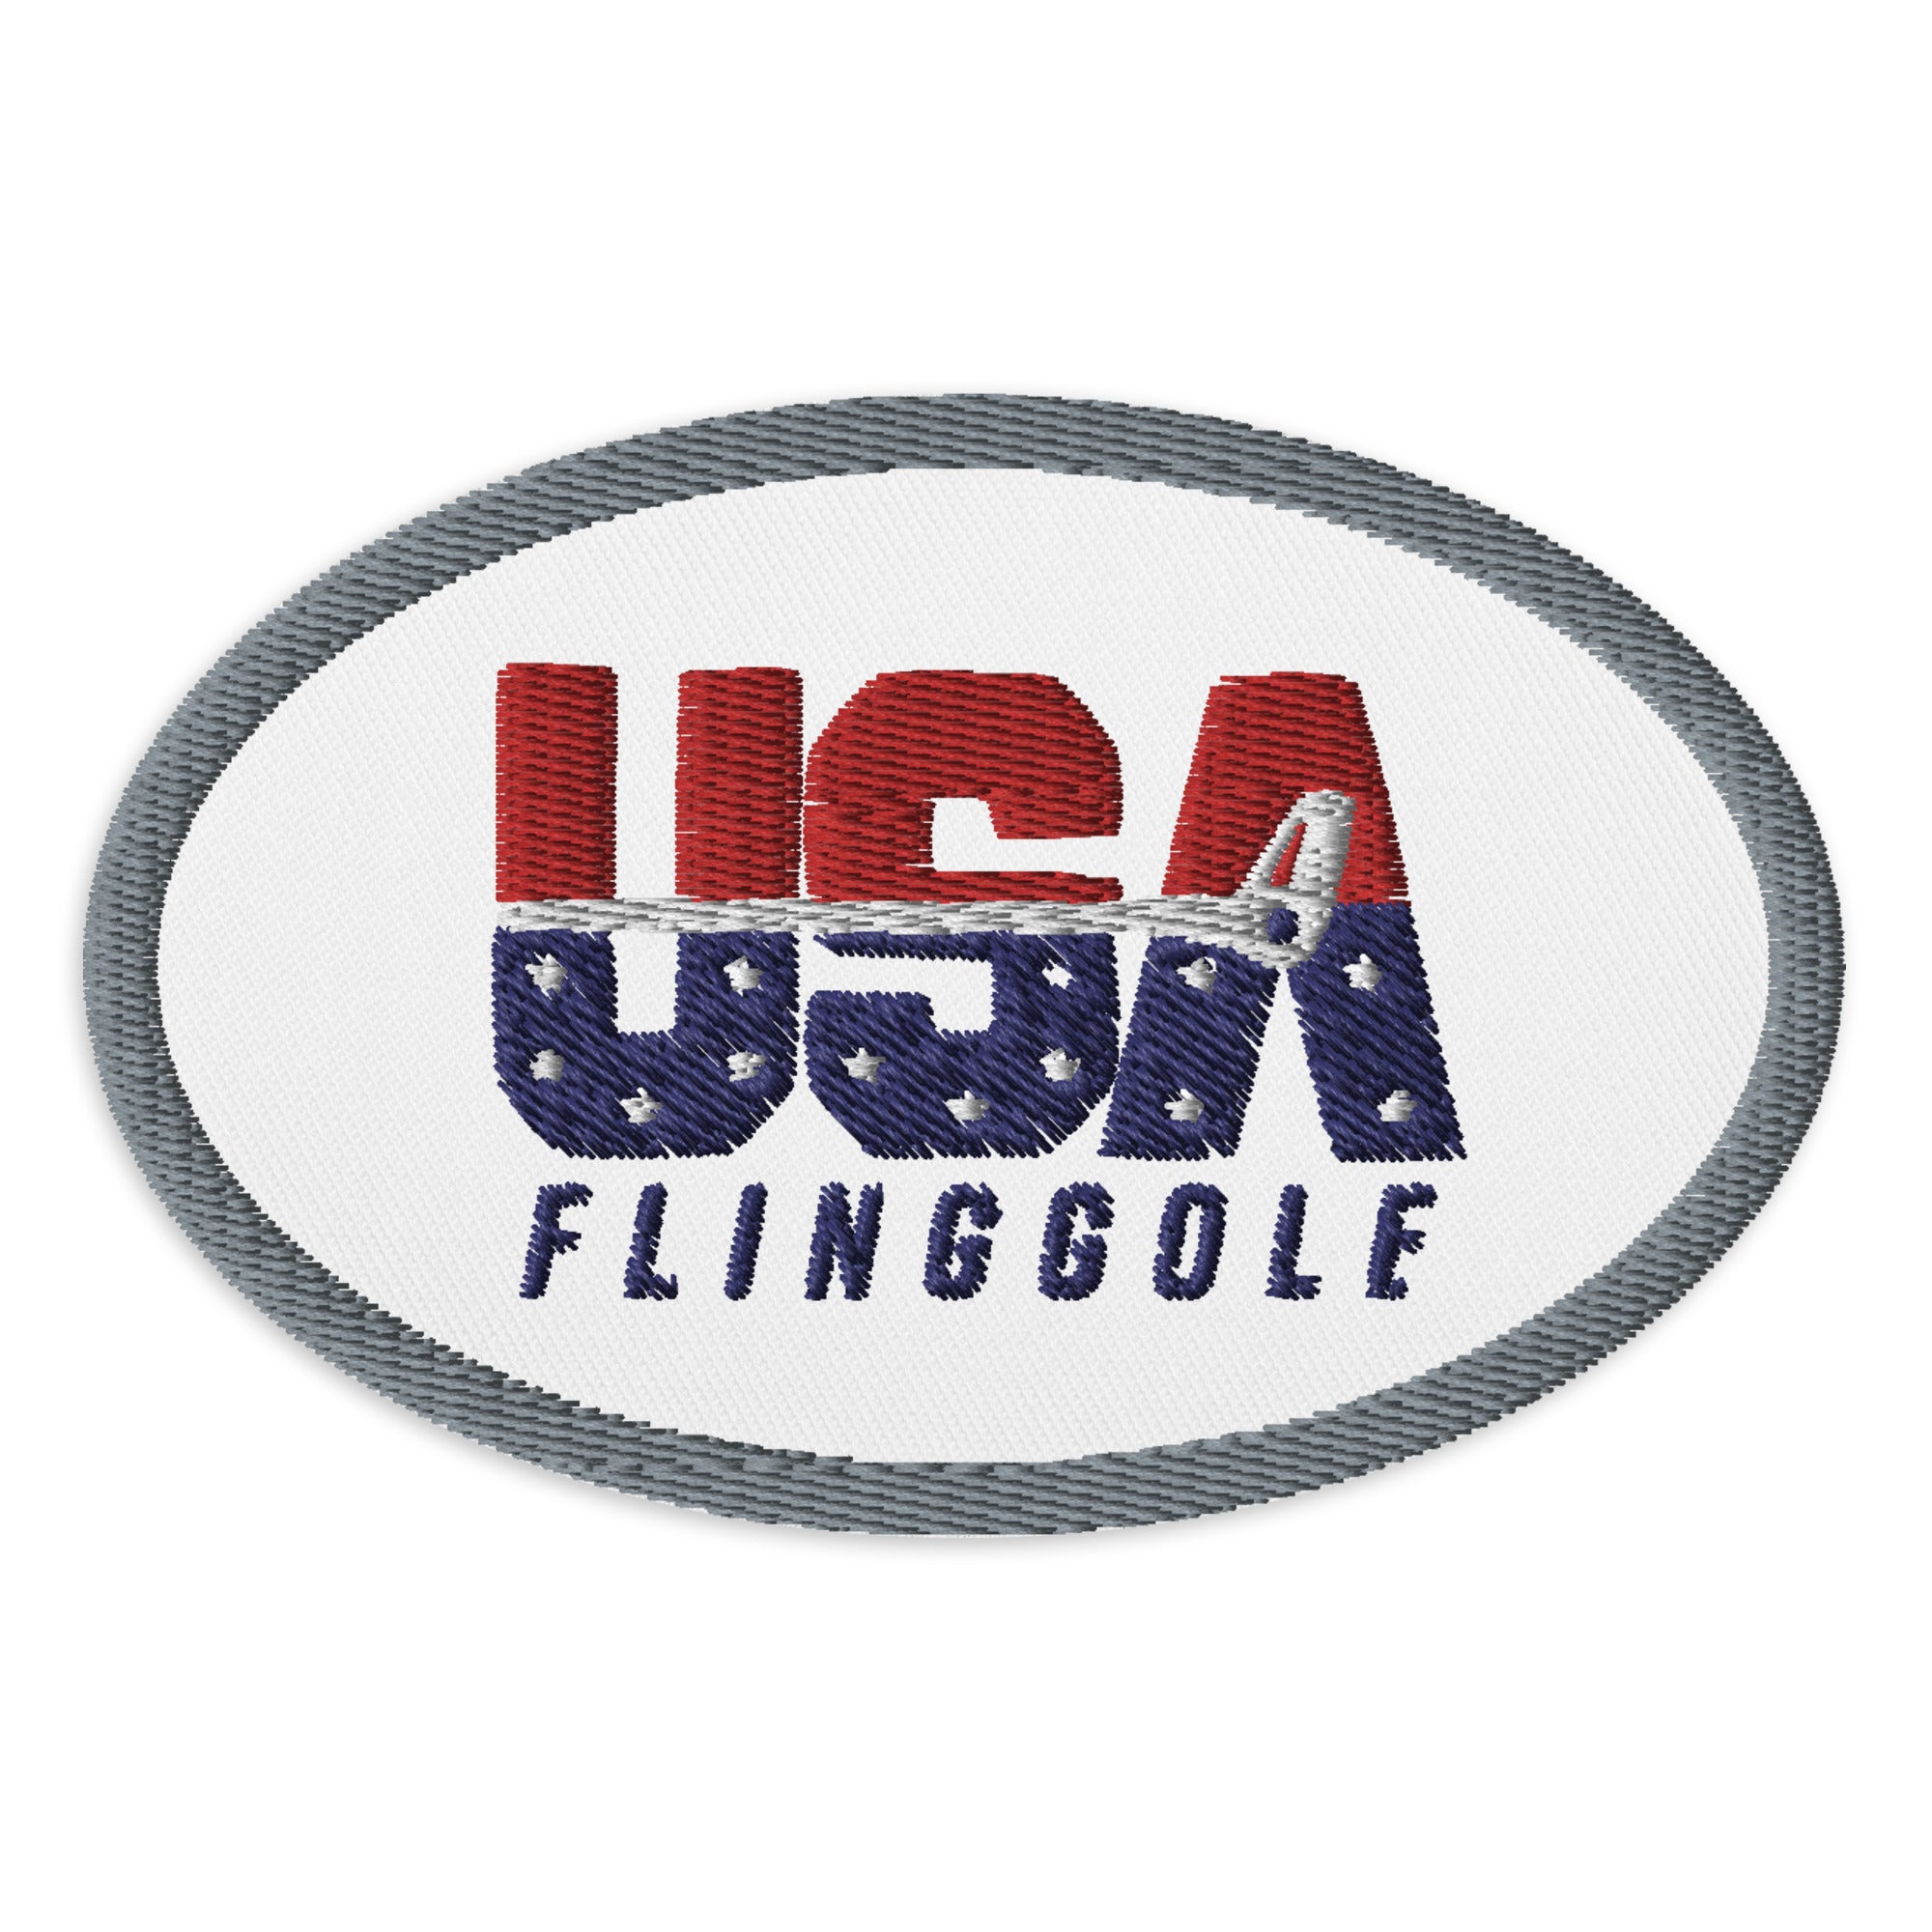 USA FlingGolf Oval Patch (Grey Border on White)